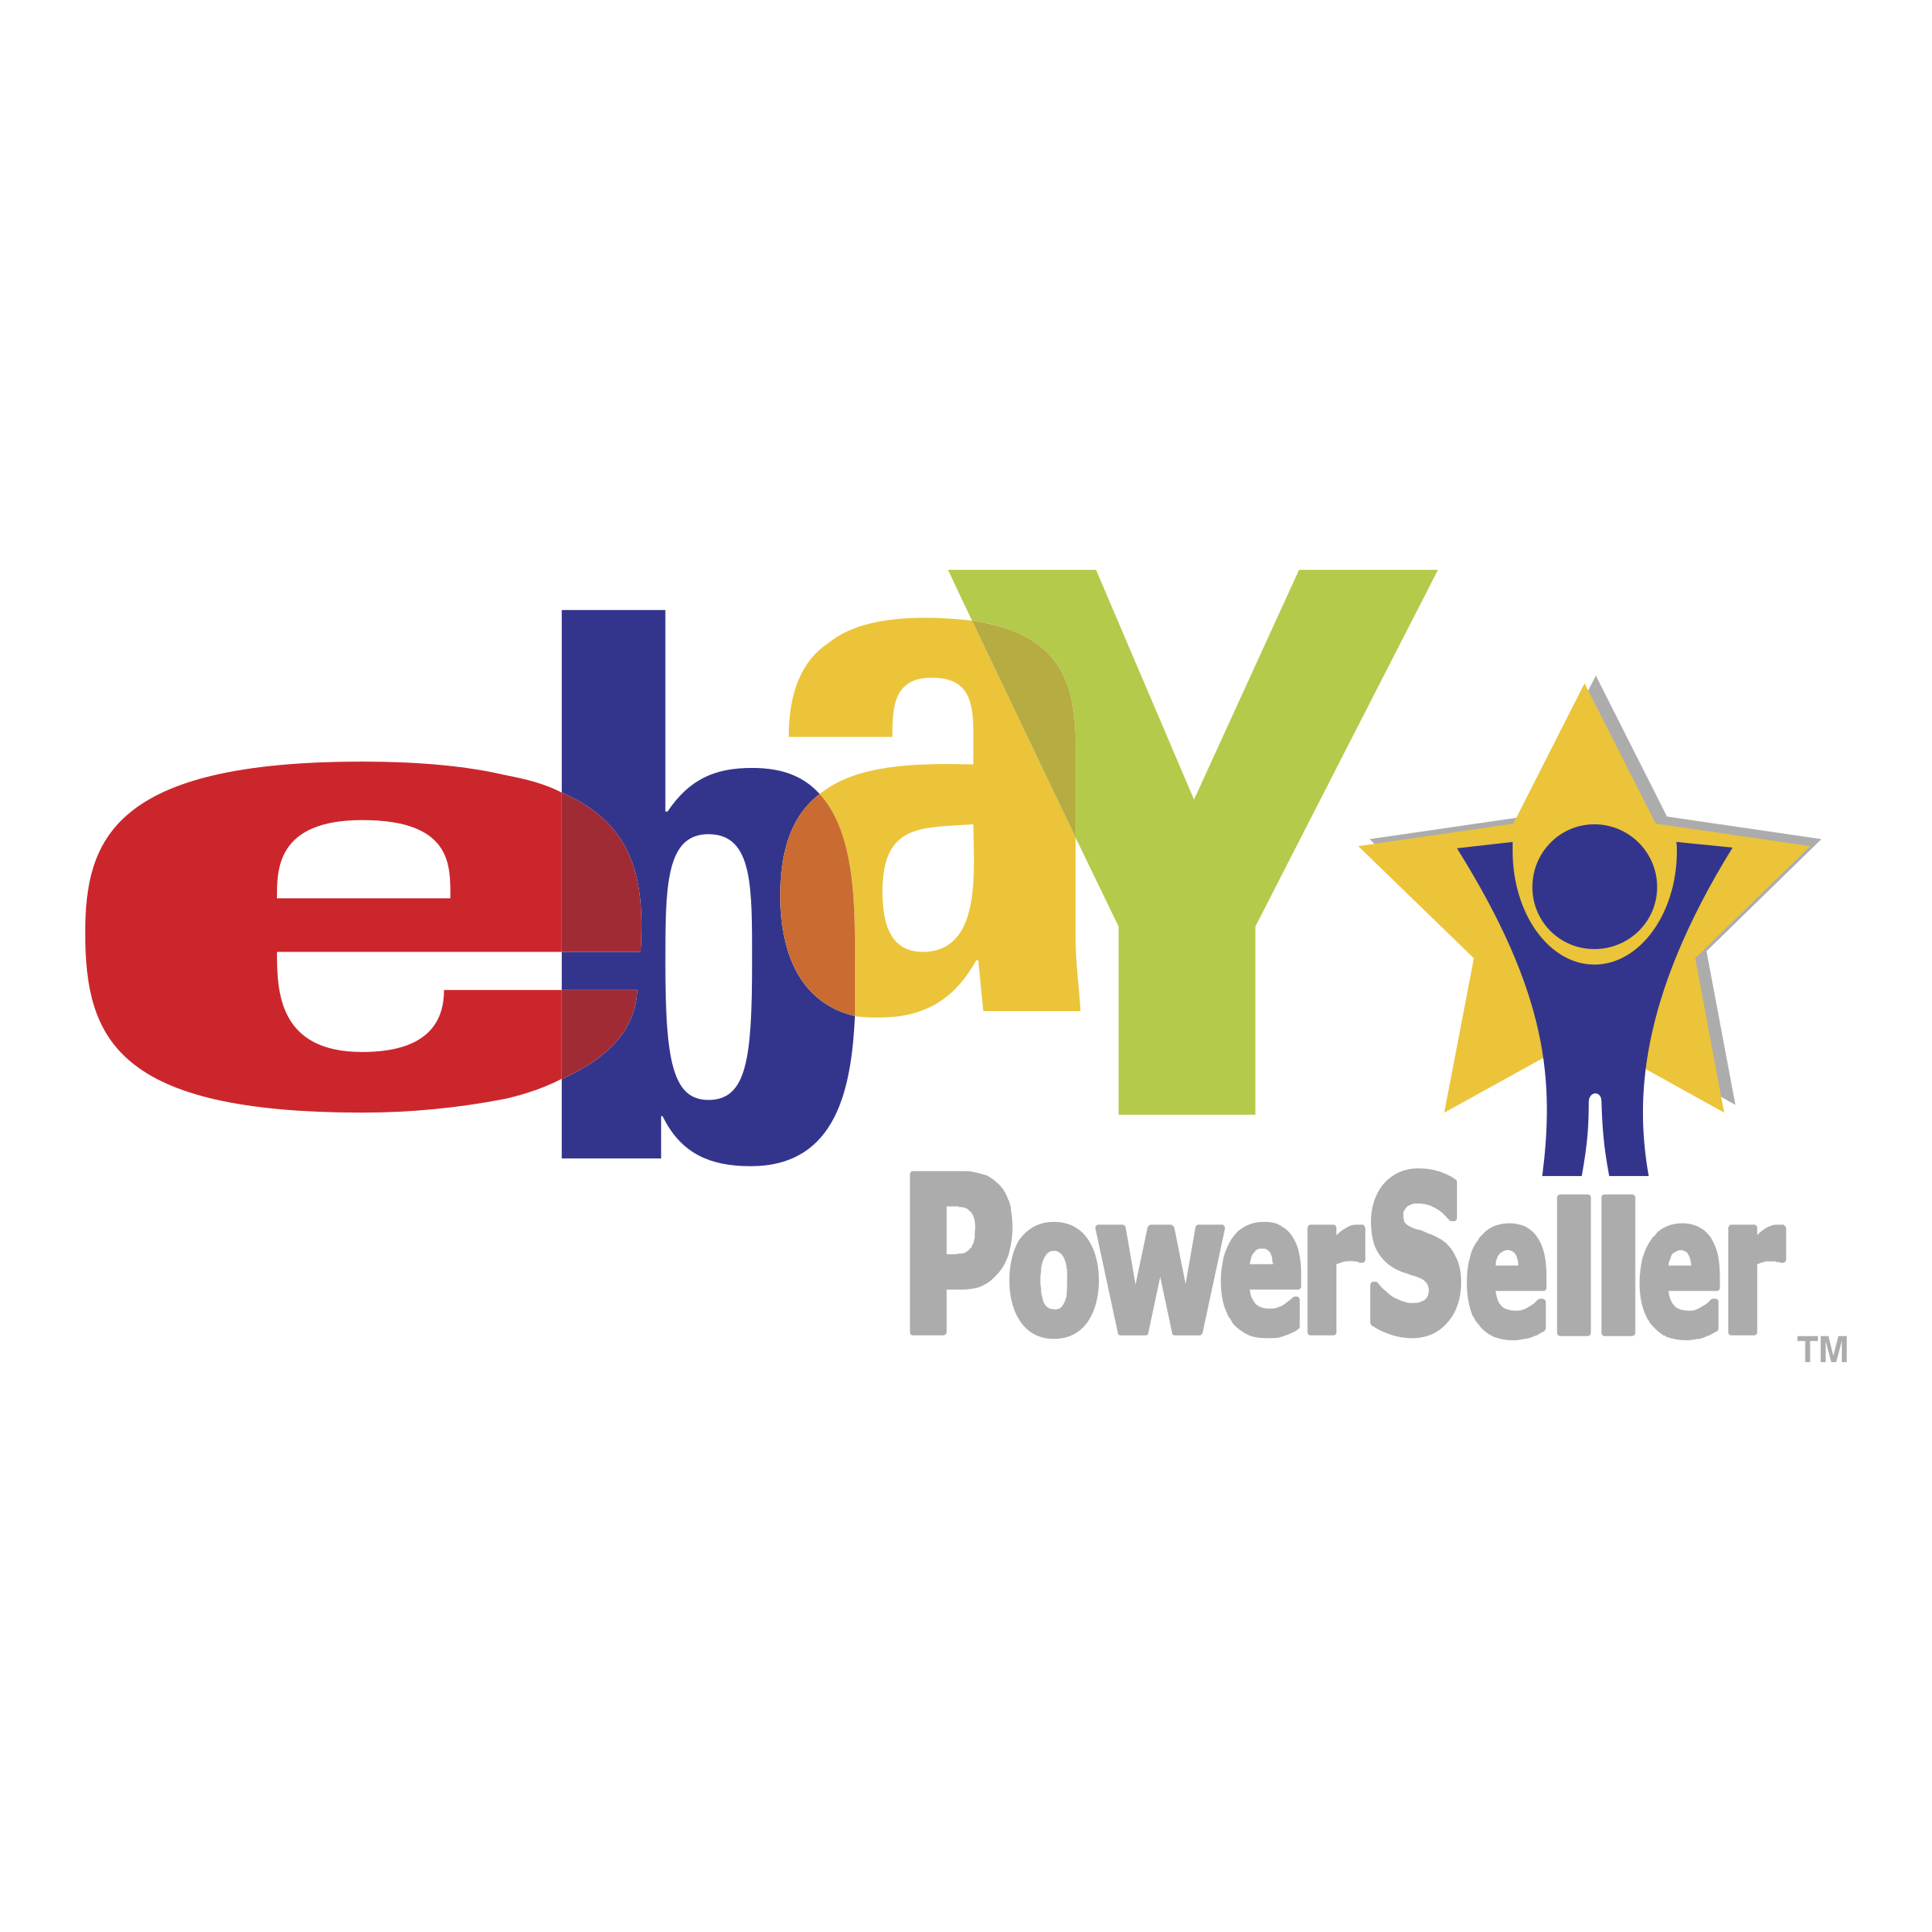 Vector Ebay Logo Transparent Images